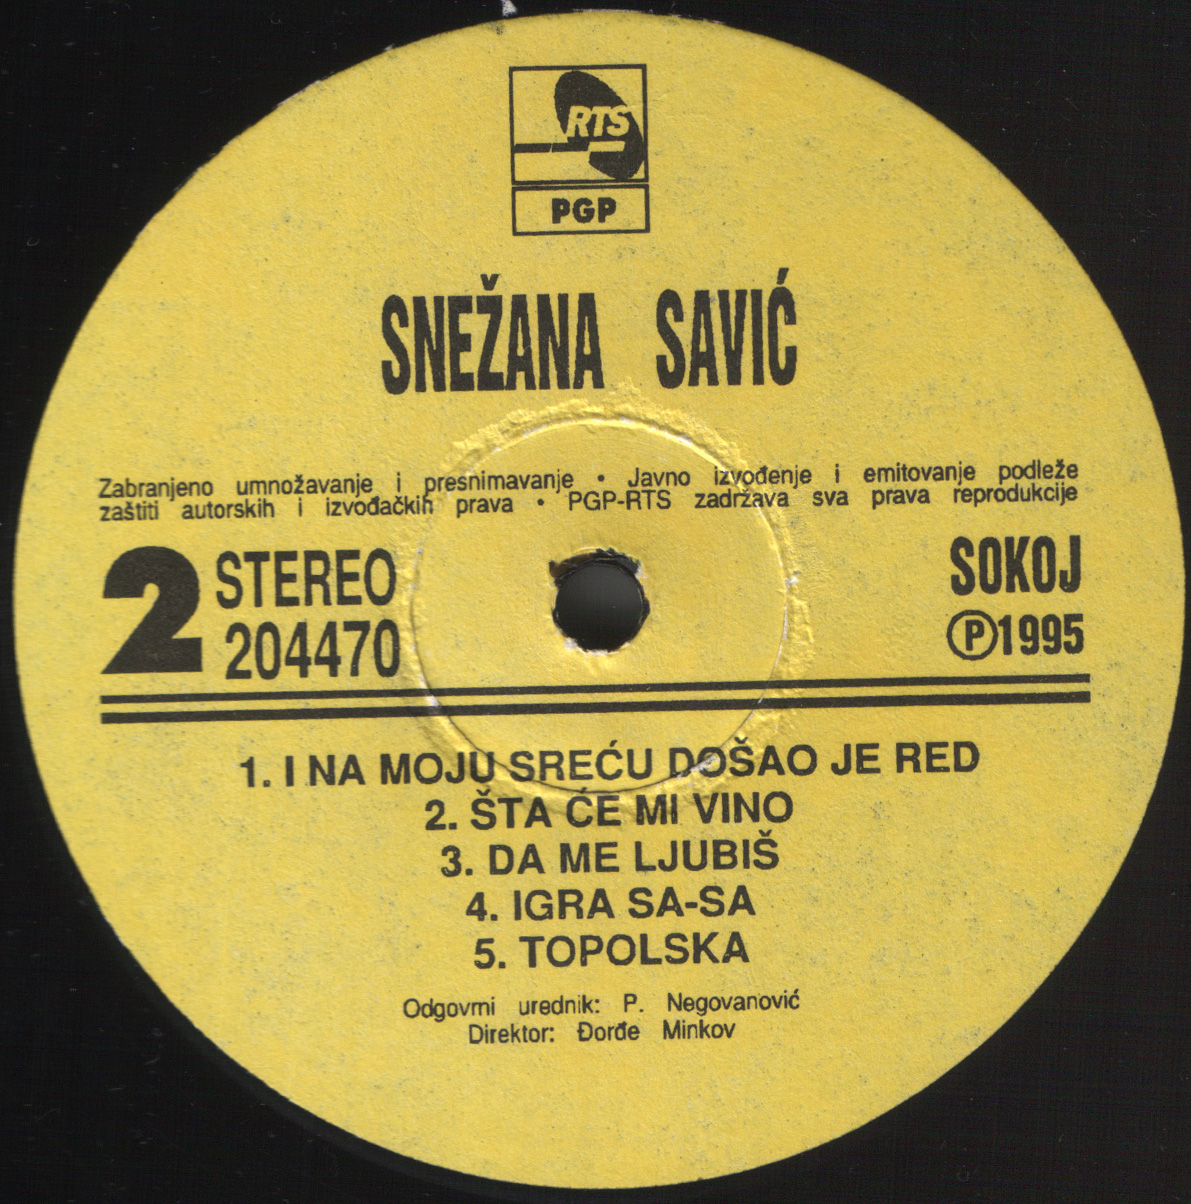 Snezana Savic 1995 B